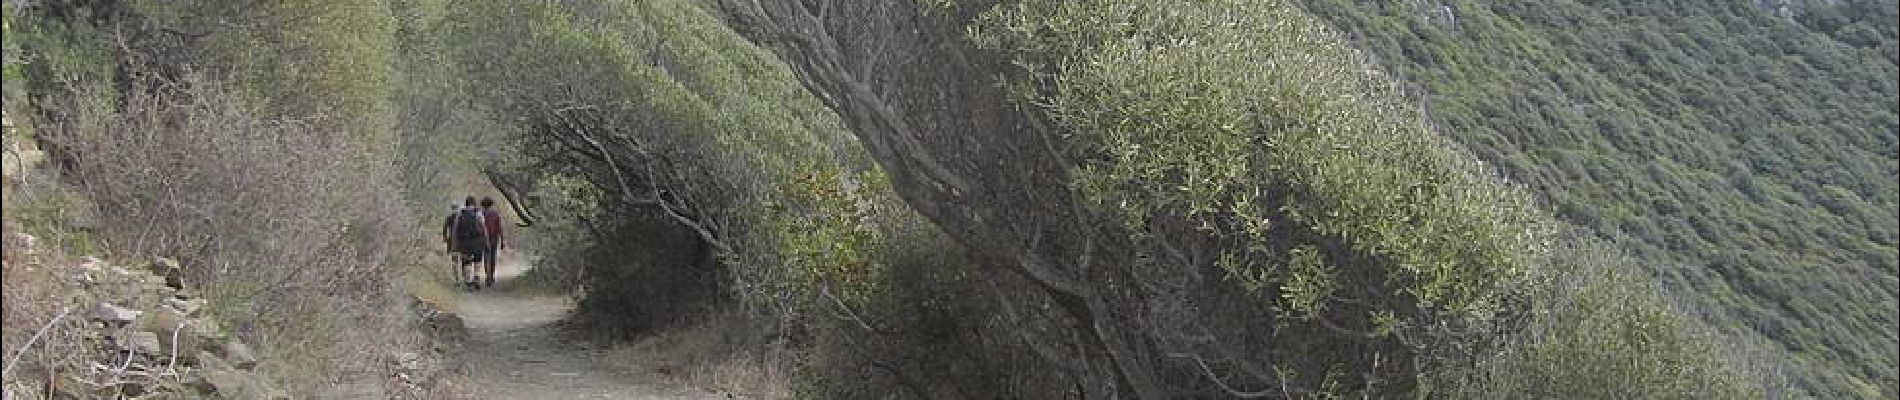 POI Ajaccio - 04 - Végétation façonnée par le vent - Photo